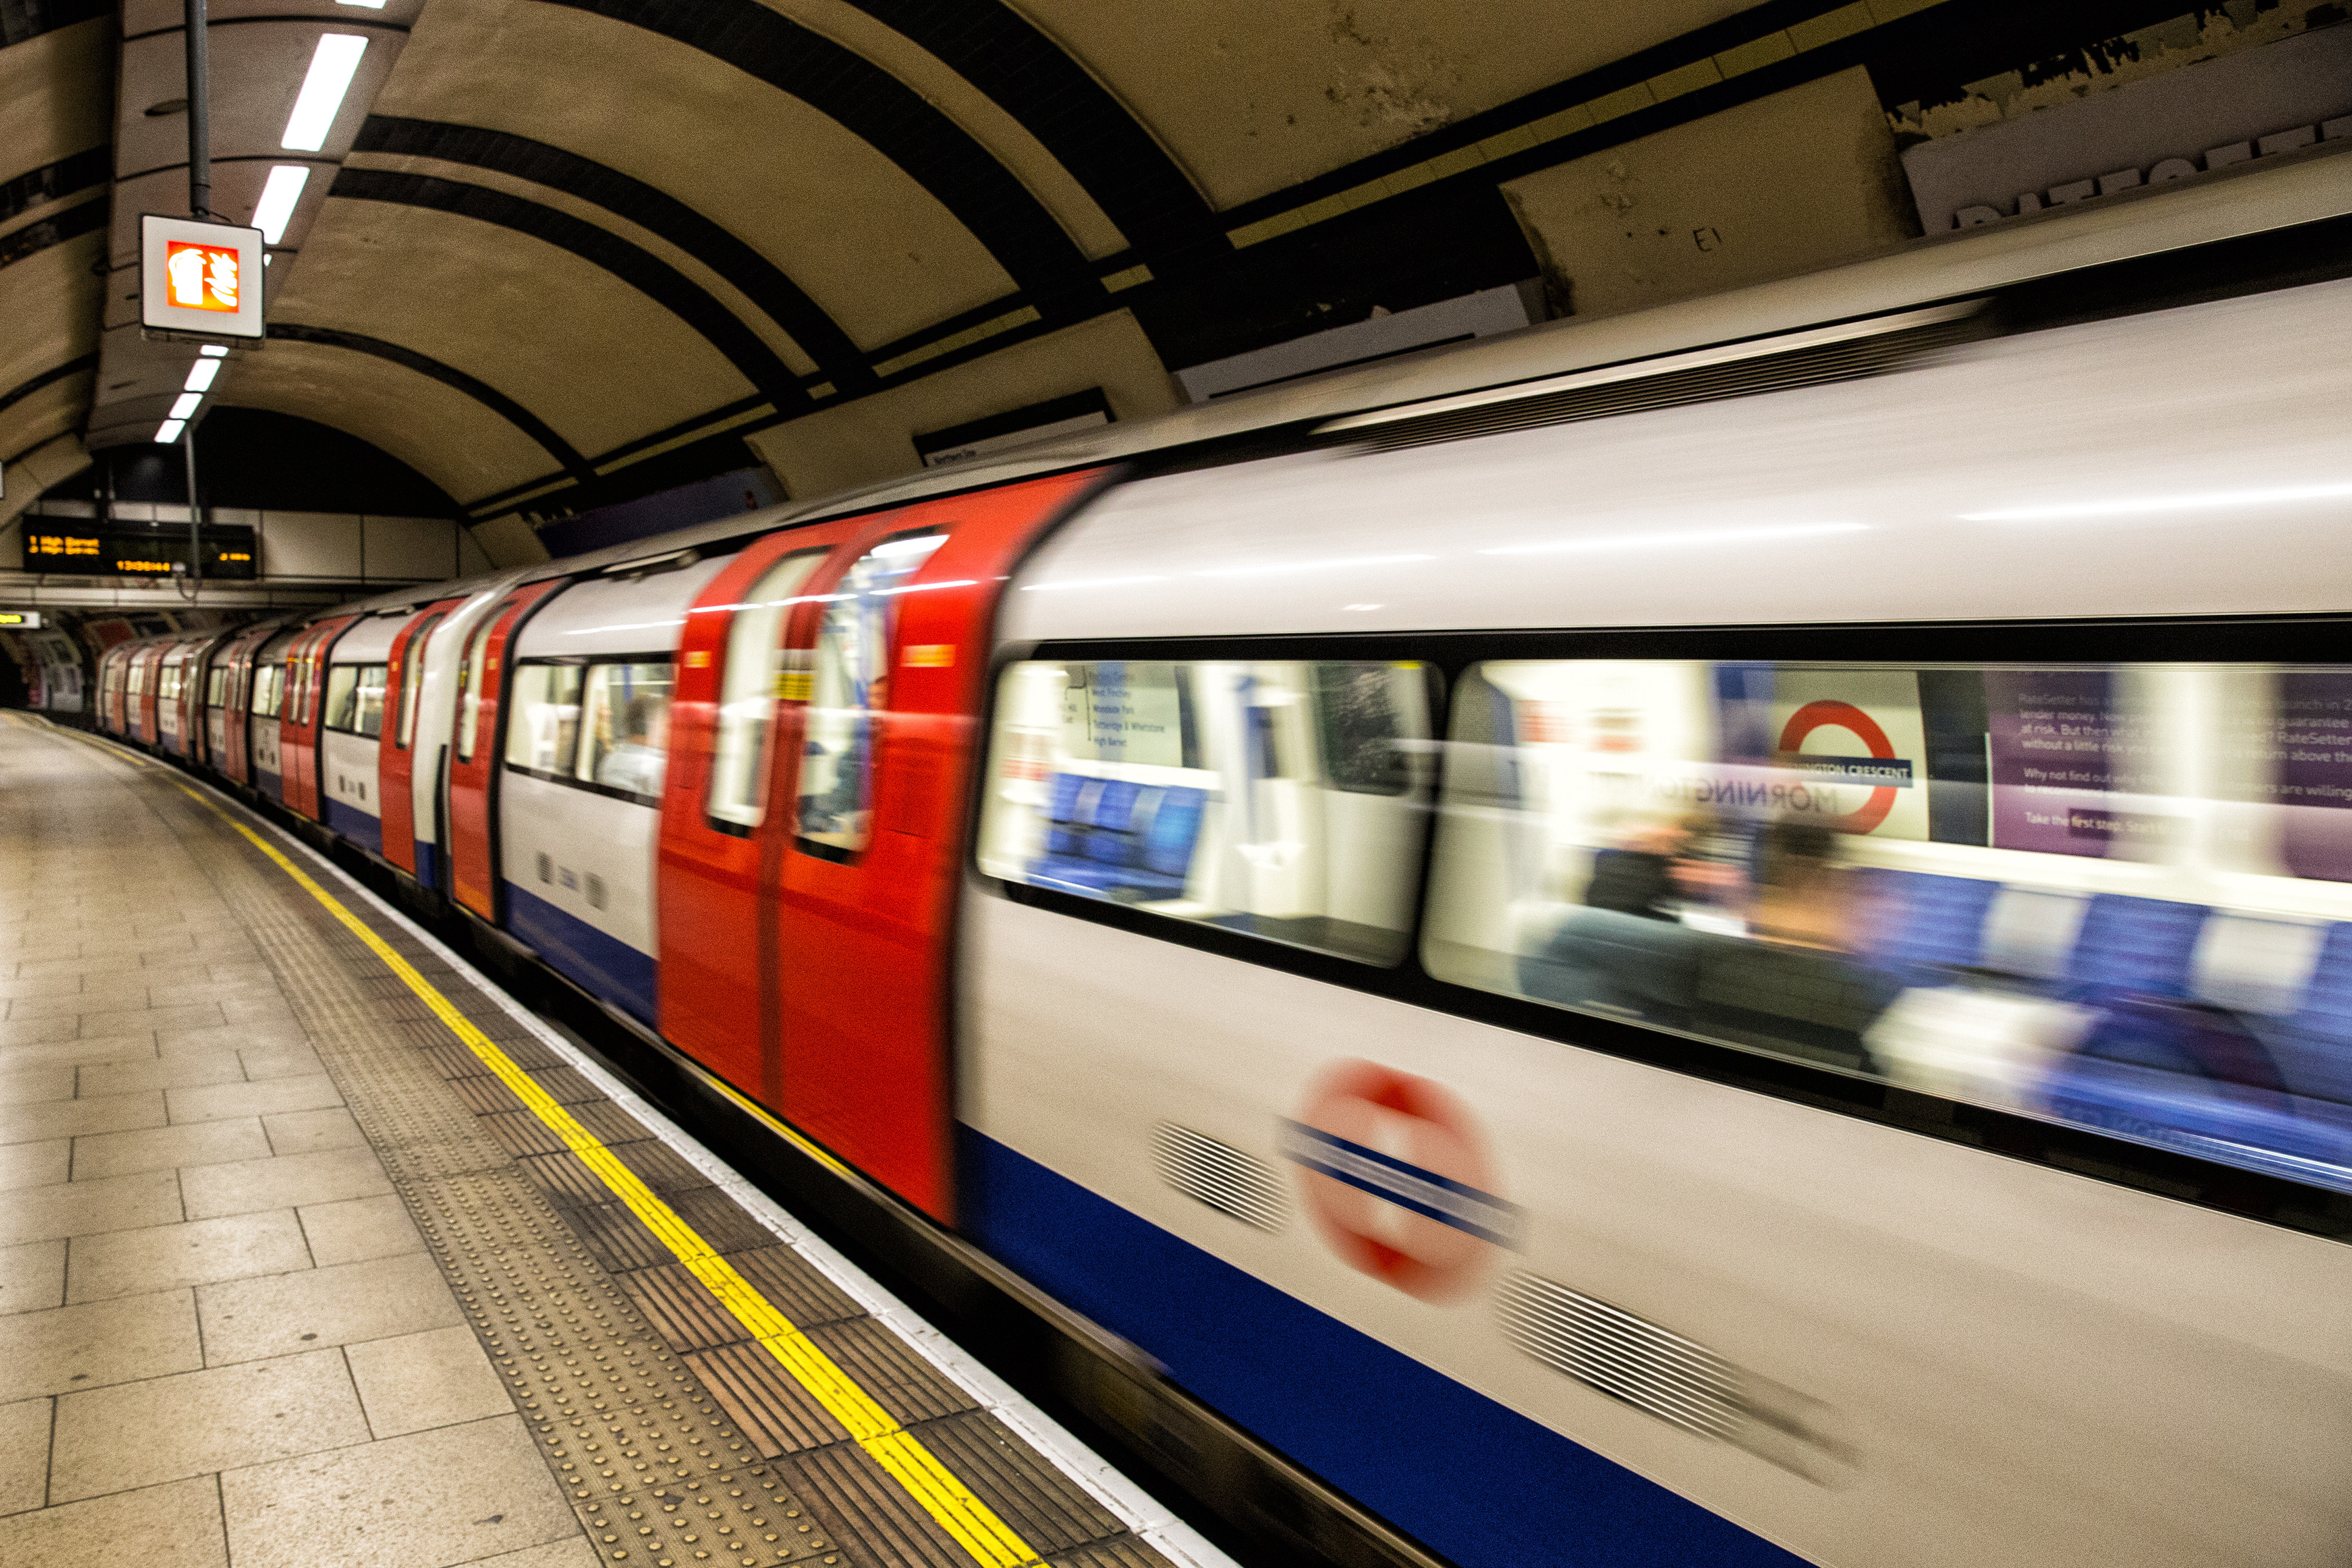 London underground steam фото 80